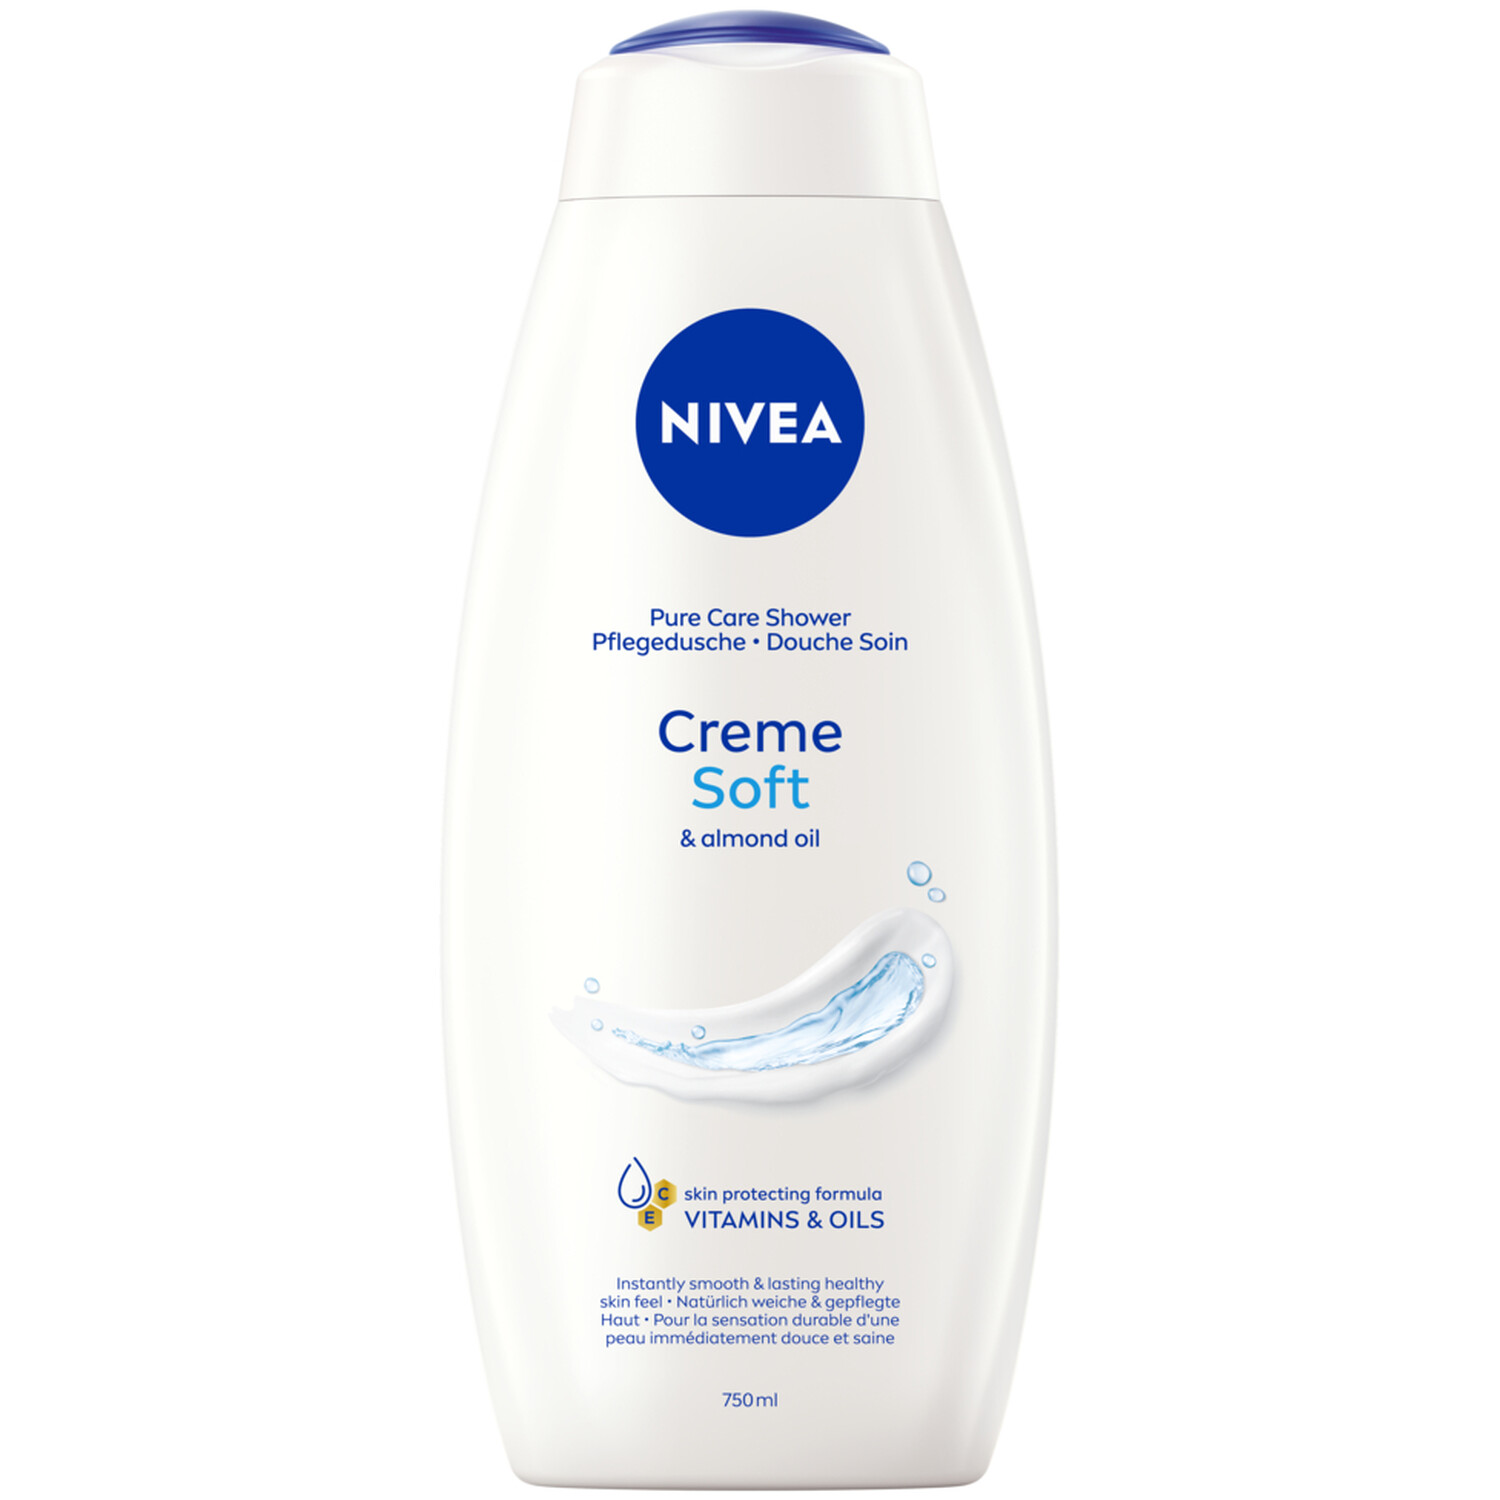 Nivea Pure Soft Care Shower Creme - White Image